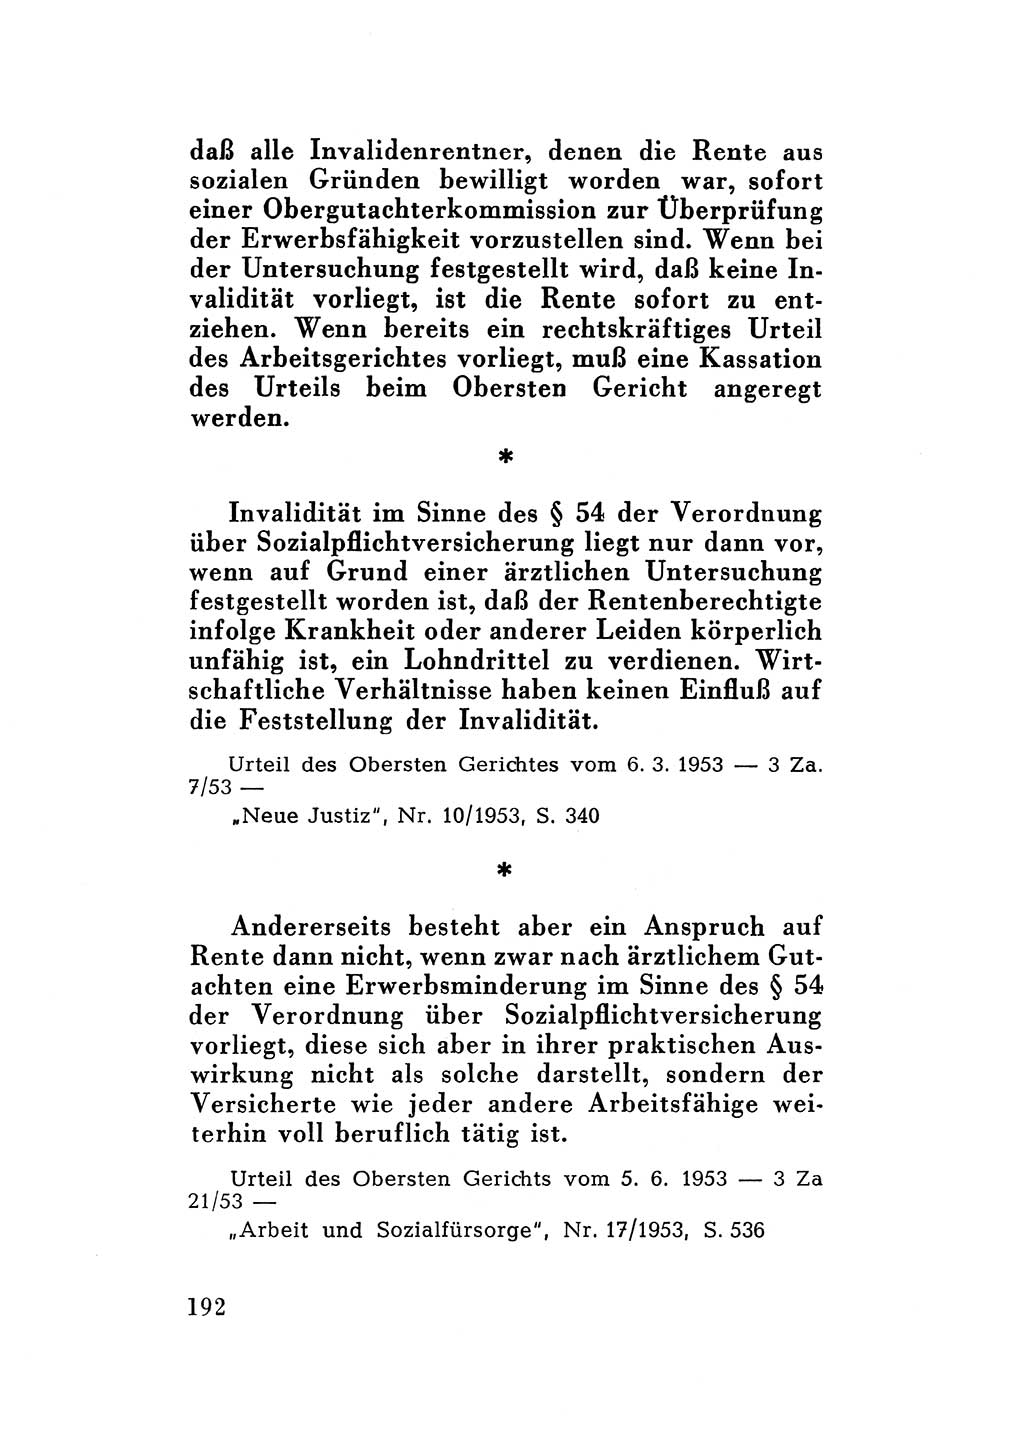 Katalog des Unrechts, Untersuchungsausschuß Freiheitlicher Juristen (UfJ) [Bundesrepublik Deutschland (BRD)] 1956, Seite 192 (Kat. UnR. UfJ BRD 1956, S. 192)